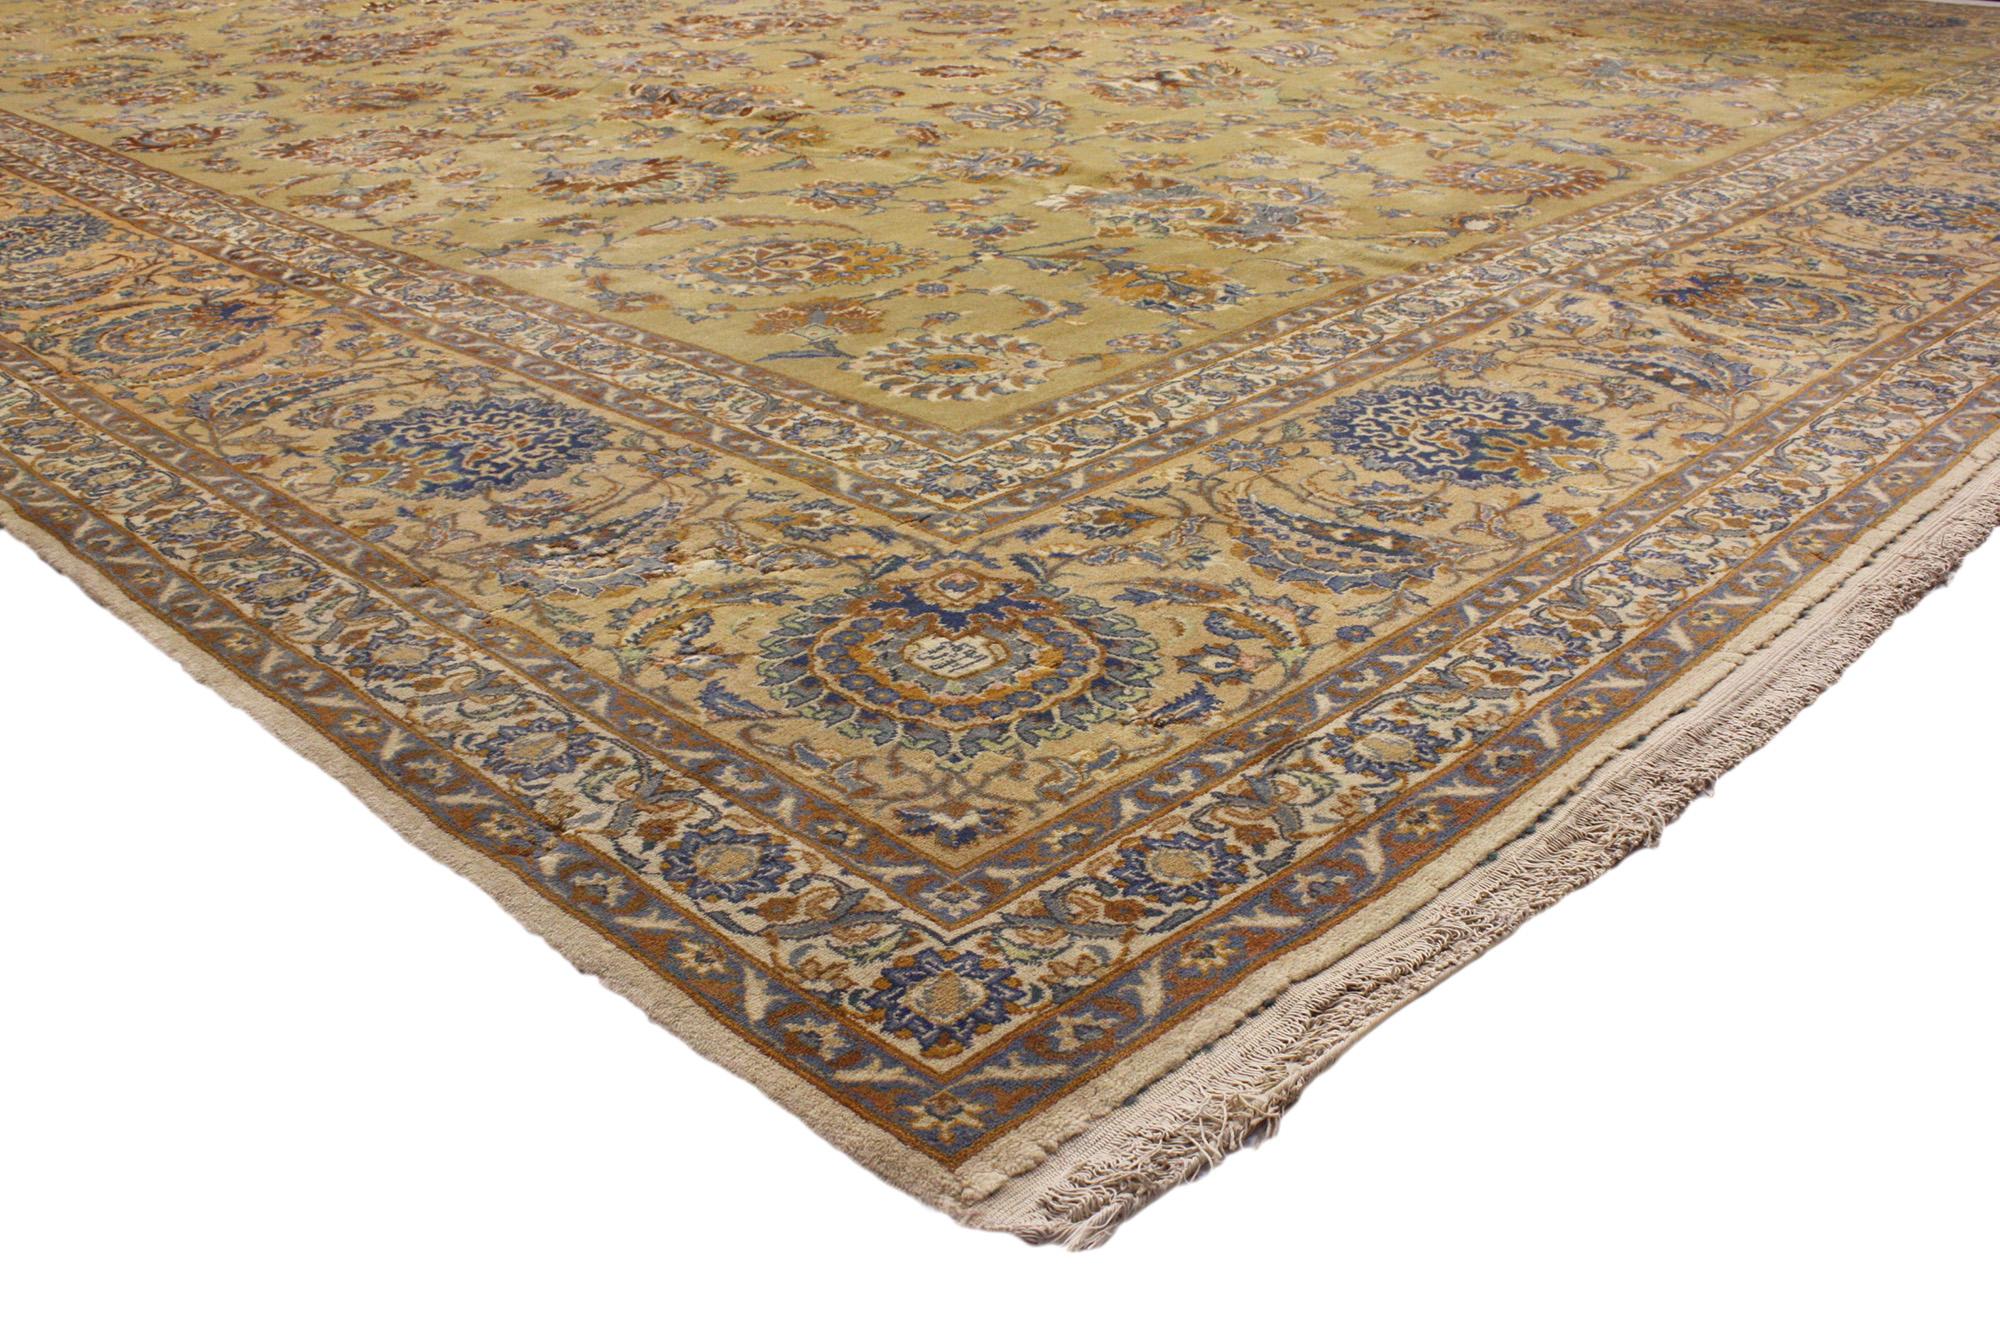 71883 Übergroßer antiker persischer Kashan-Teppich, 13'08 x 21'08. Persische Kashan-Teppiche sind sorgfältig gefertigte, handgeknüpfte Teppiche aus Kashan, Iran, die für ihre komplizierten Designs, ihre hervorragende Handwerkskunst und ihr